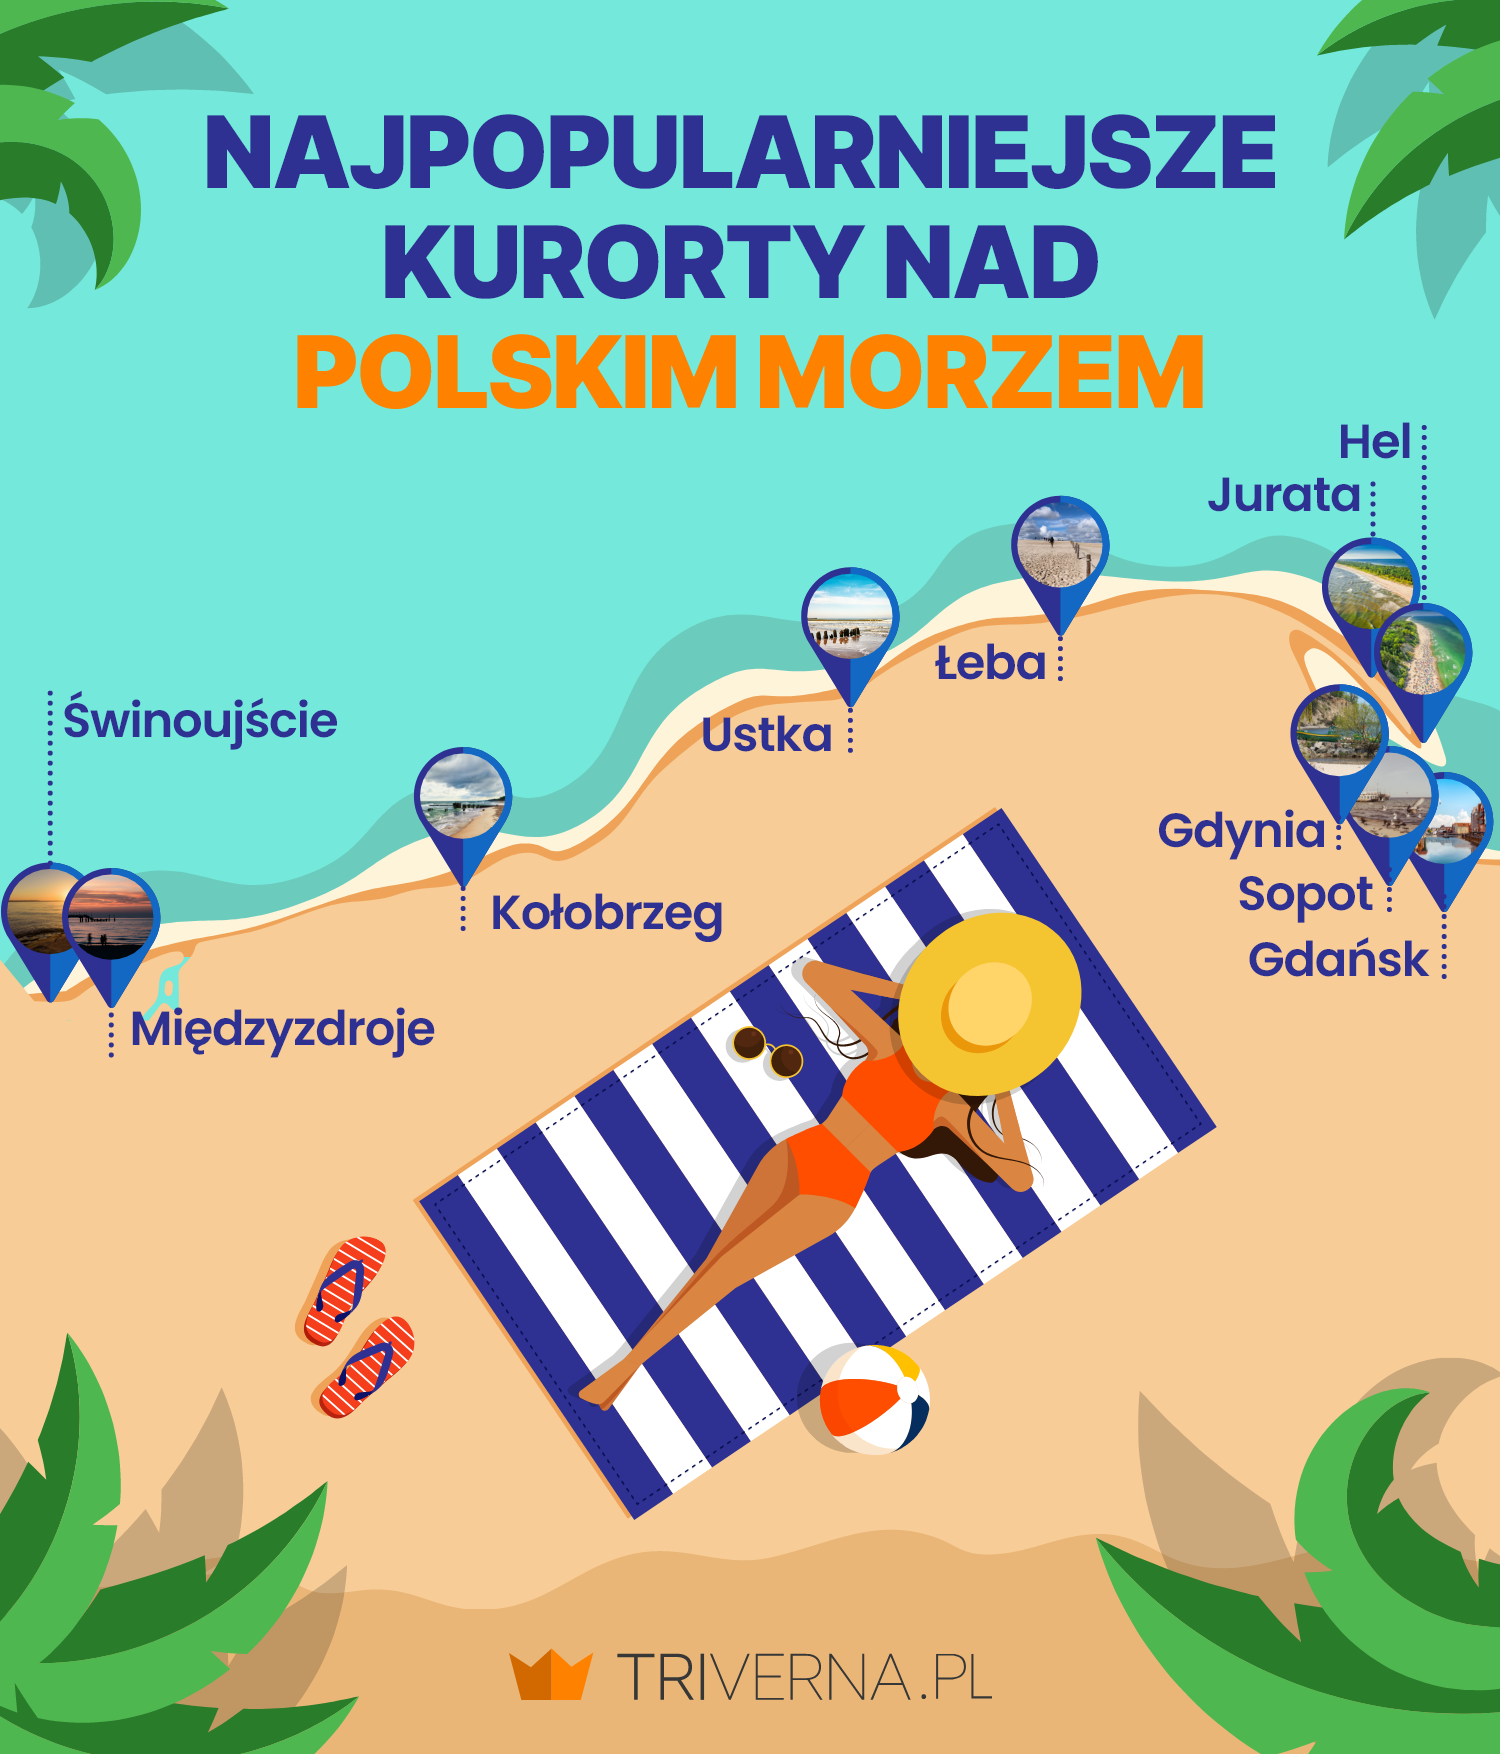 Najpopularniejsze kurorty nad polskim morzem
